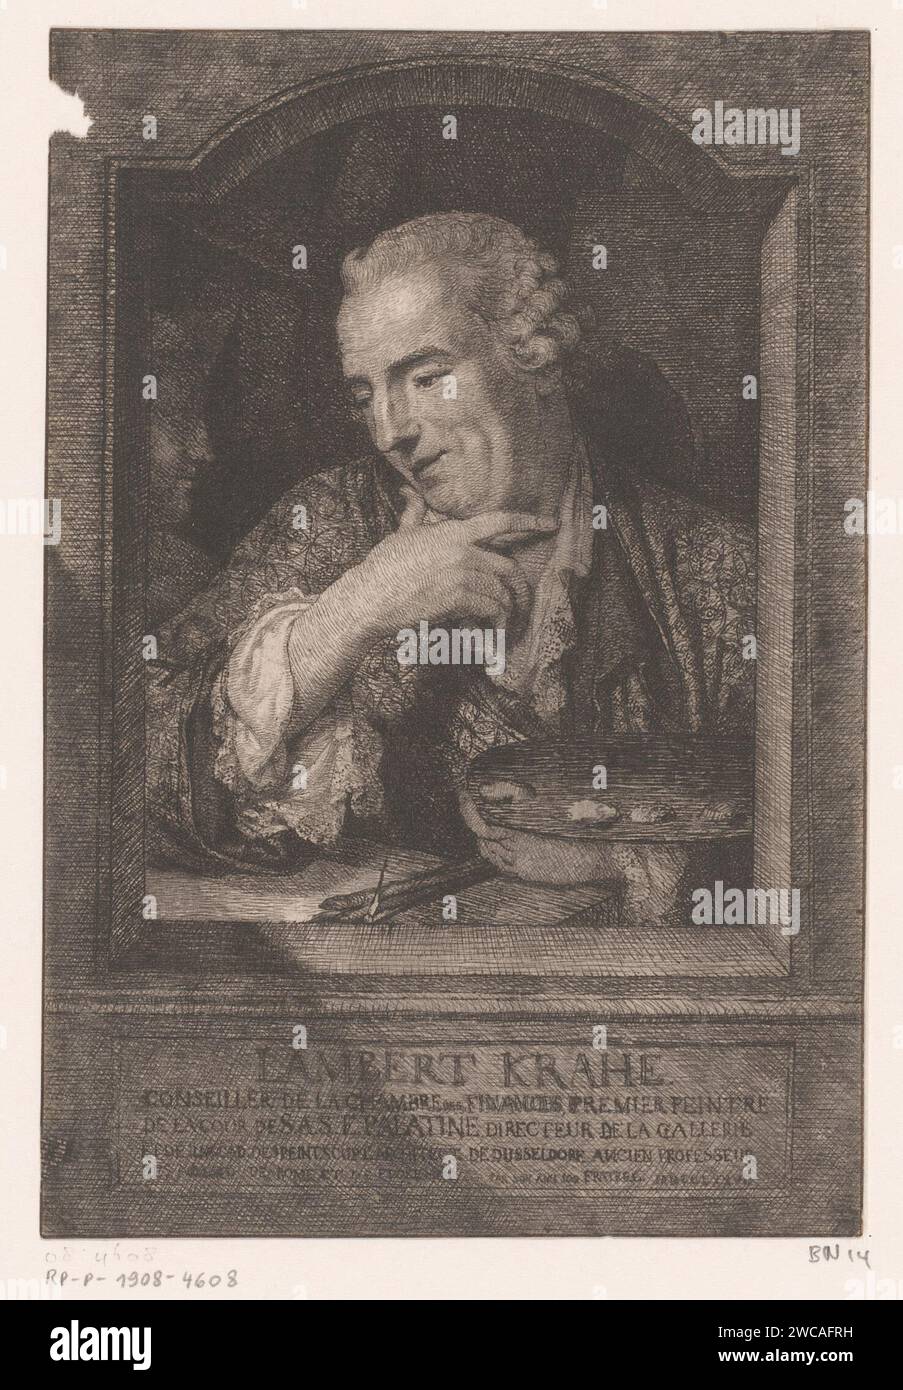 Portret van Lambert Krah, Joseph I Fratrel, 1777 print France papier gravure de personnages historiques. portrait, autoportrait de peintre. « trompe l'œil » Banque D'Images